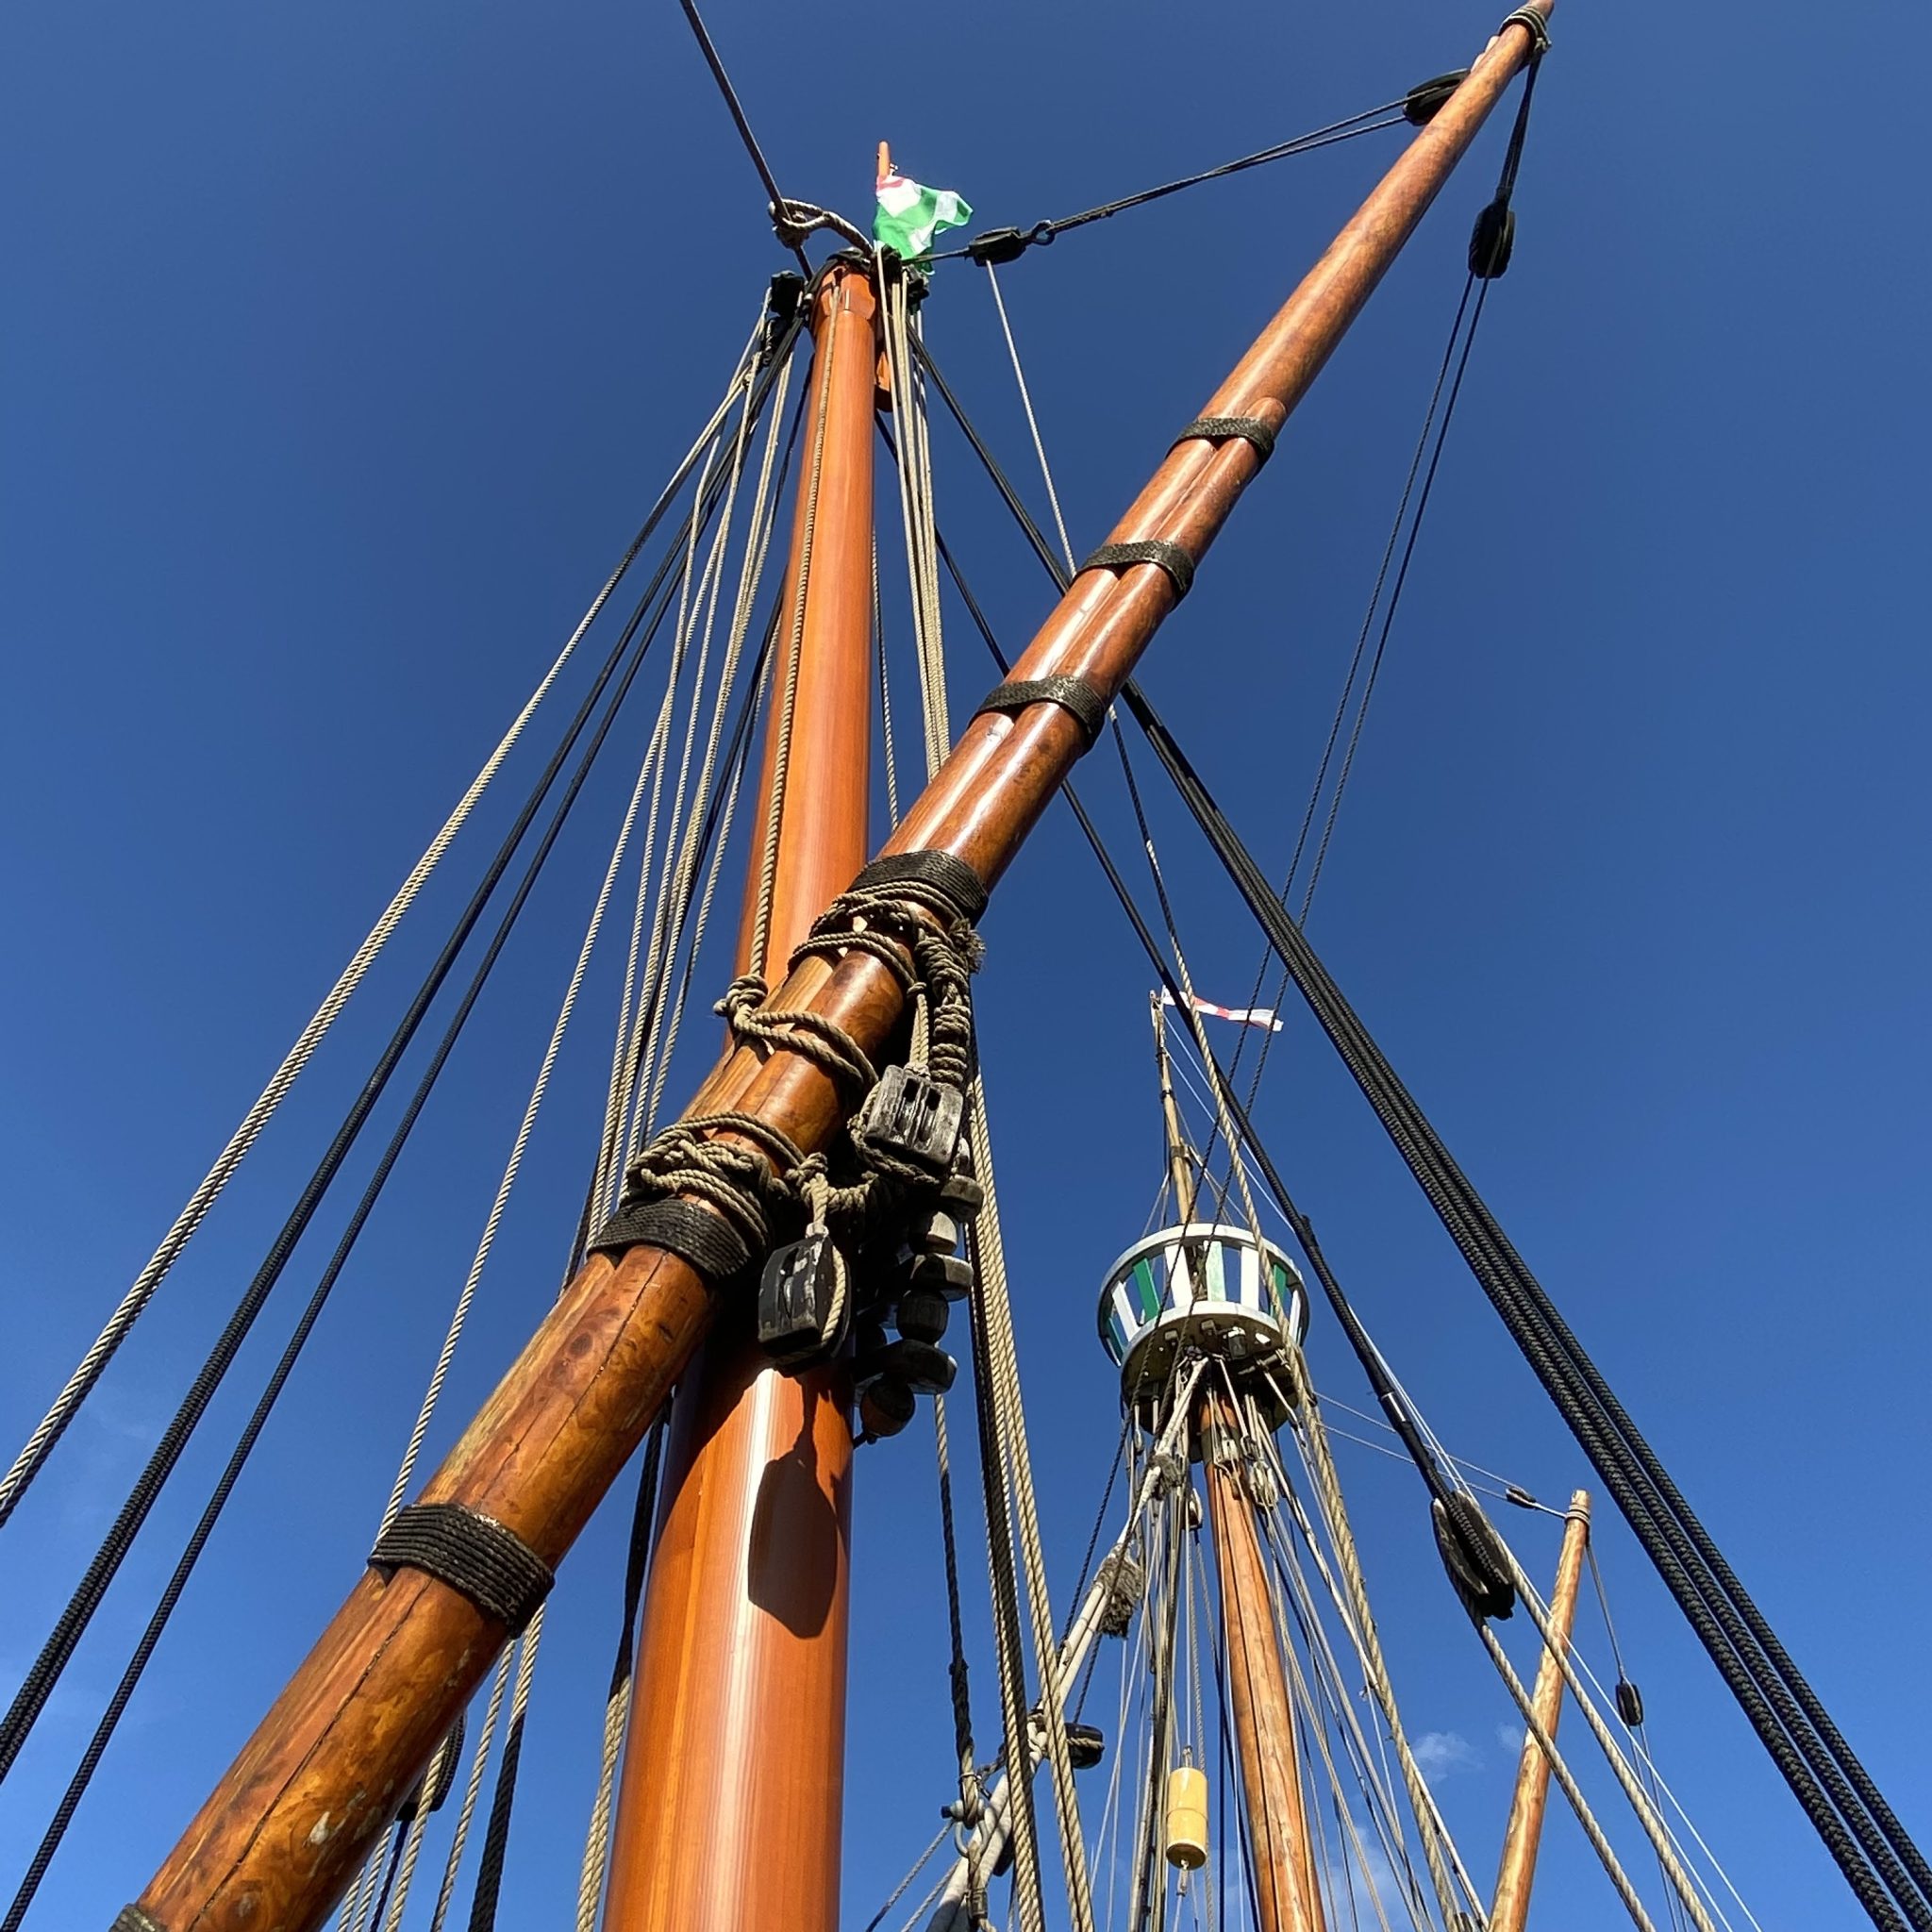 Sailing ship mast and rigging